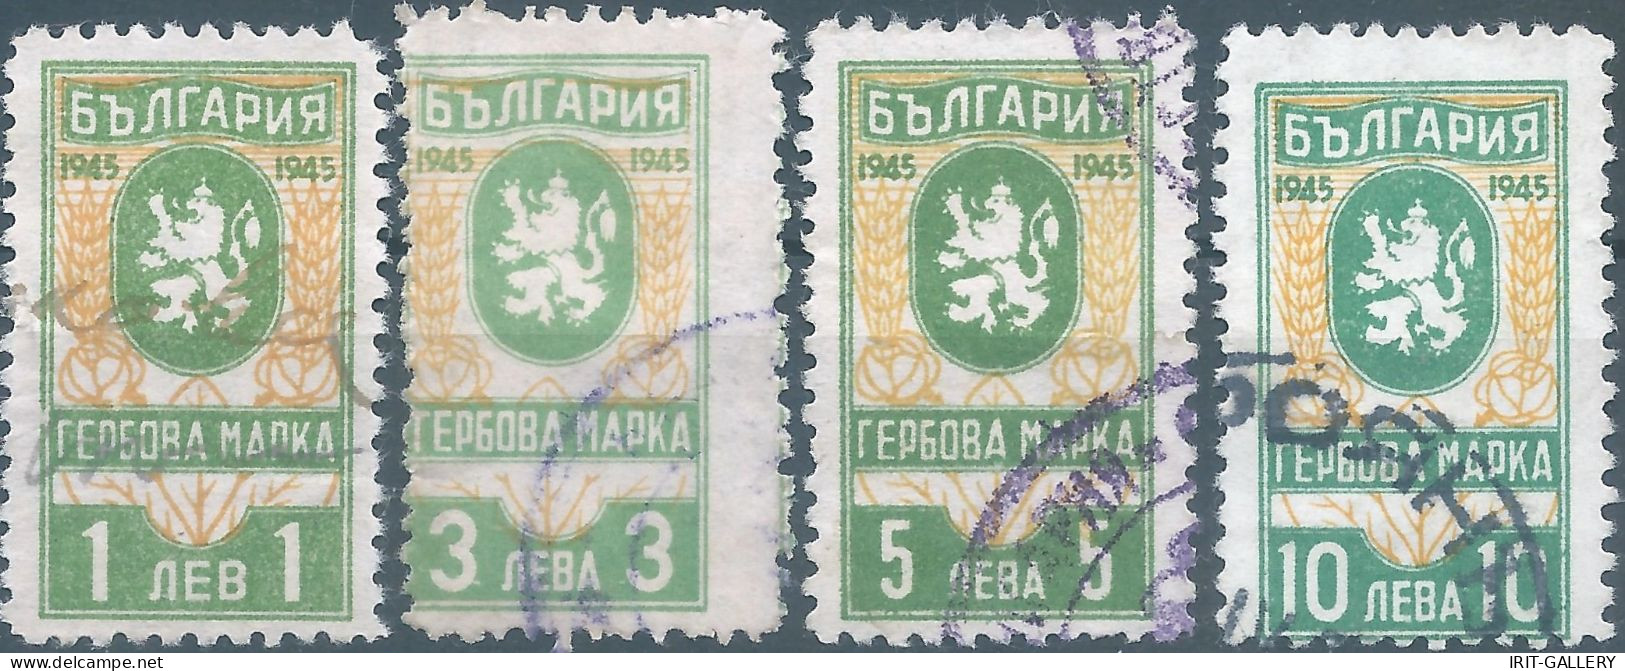 Bulgaria - Bulgarien - Bulgare,1945 Revenue Stamp Tax Fiscal,Used - Sellos De Servicio